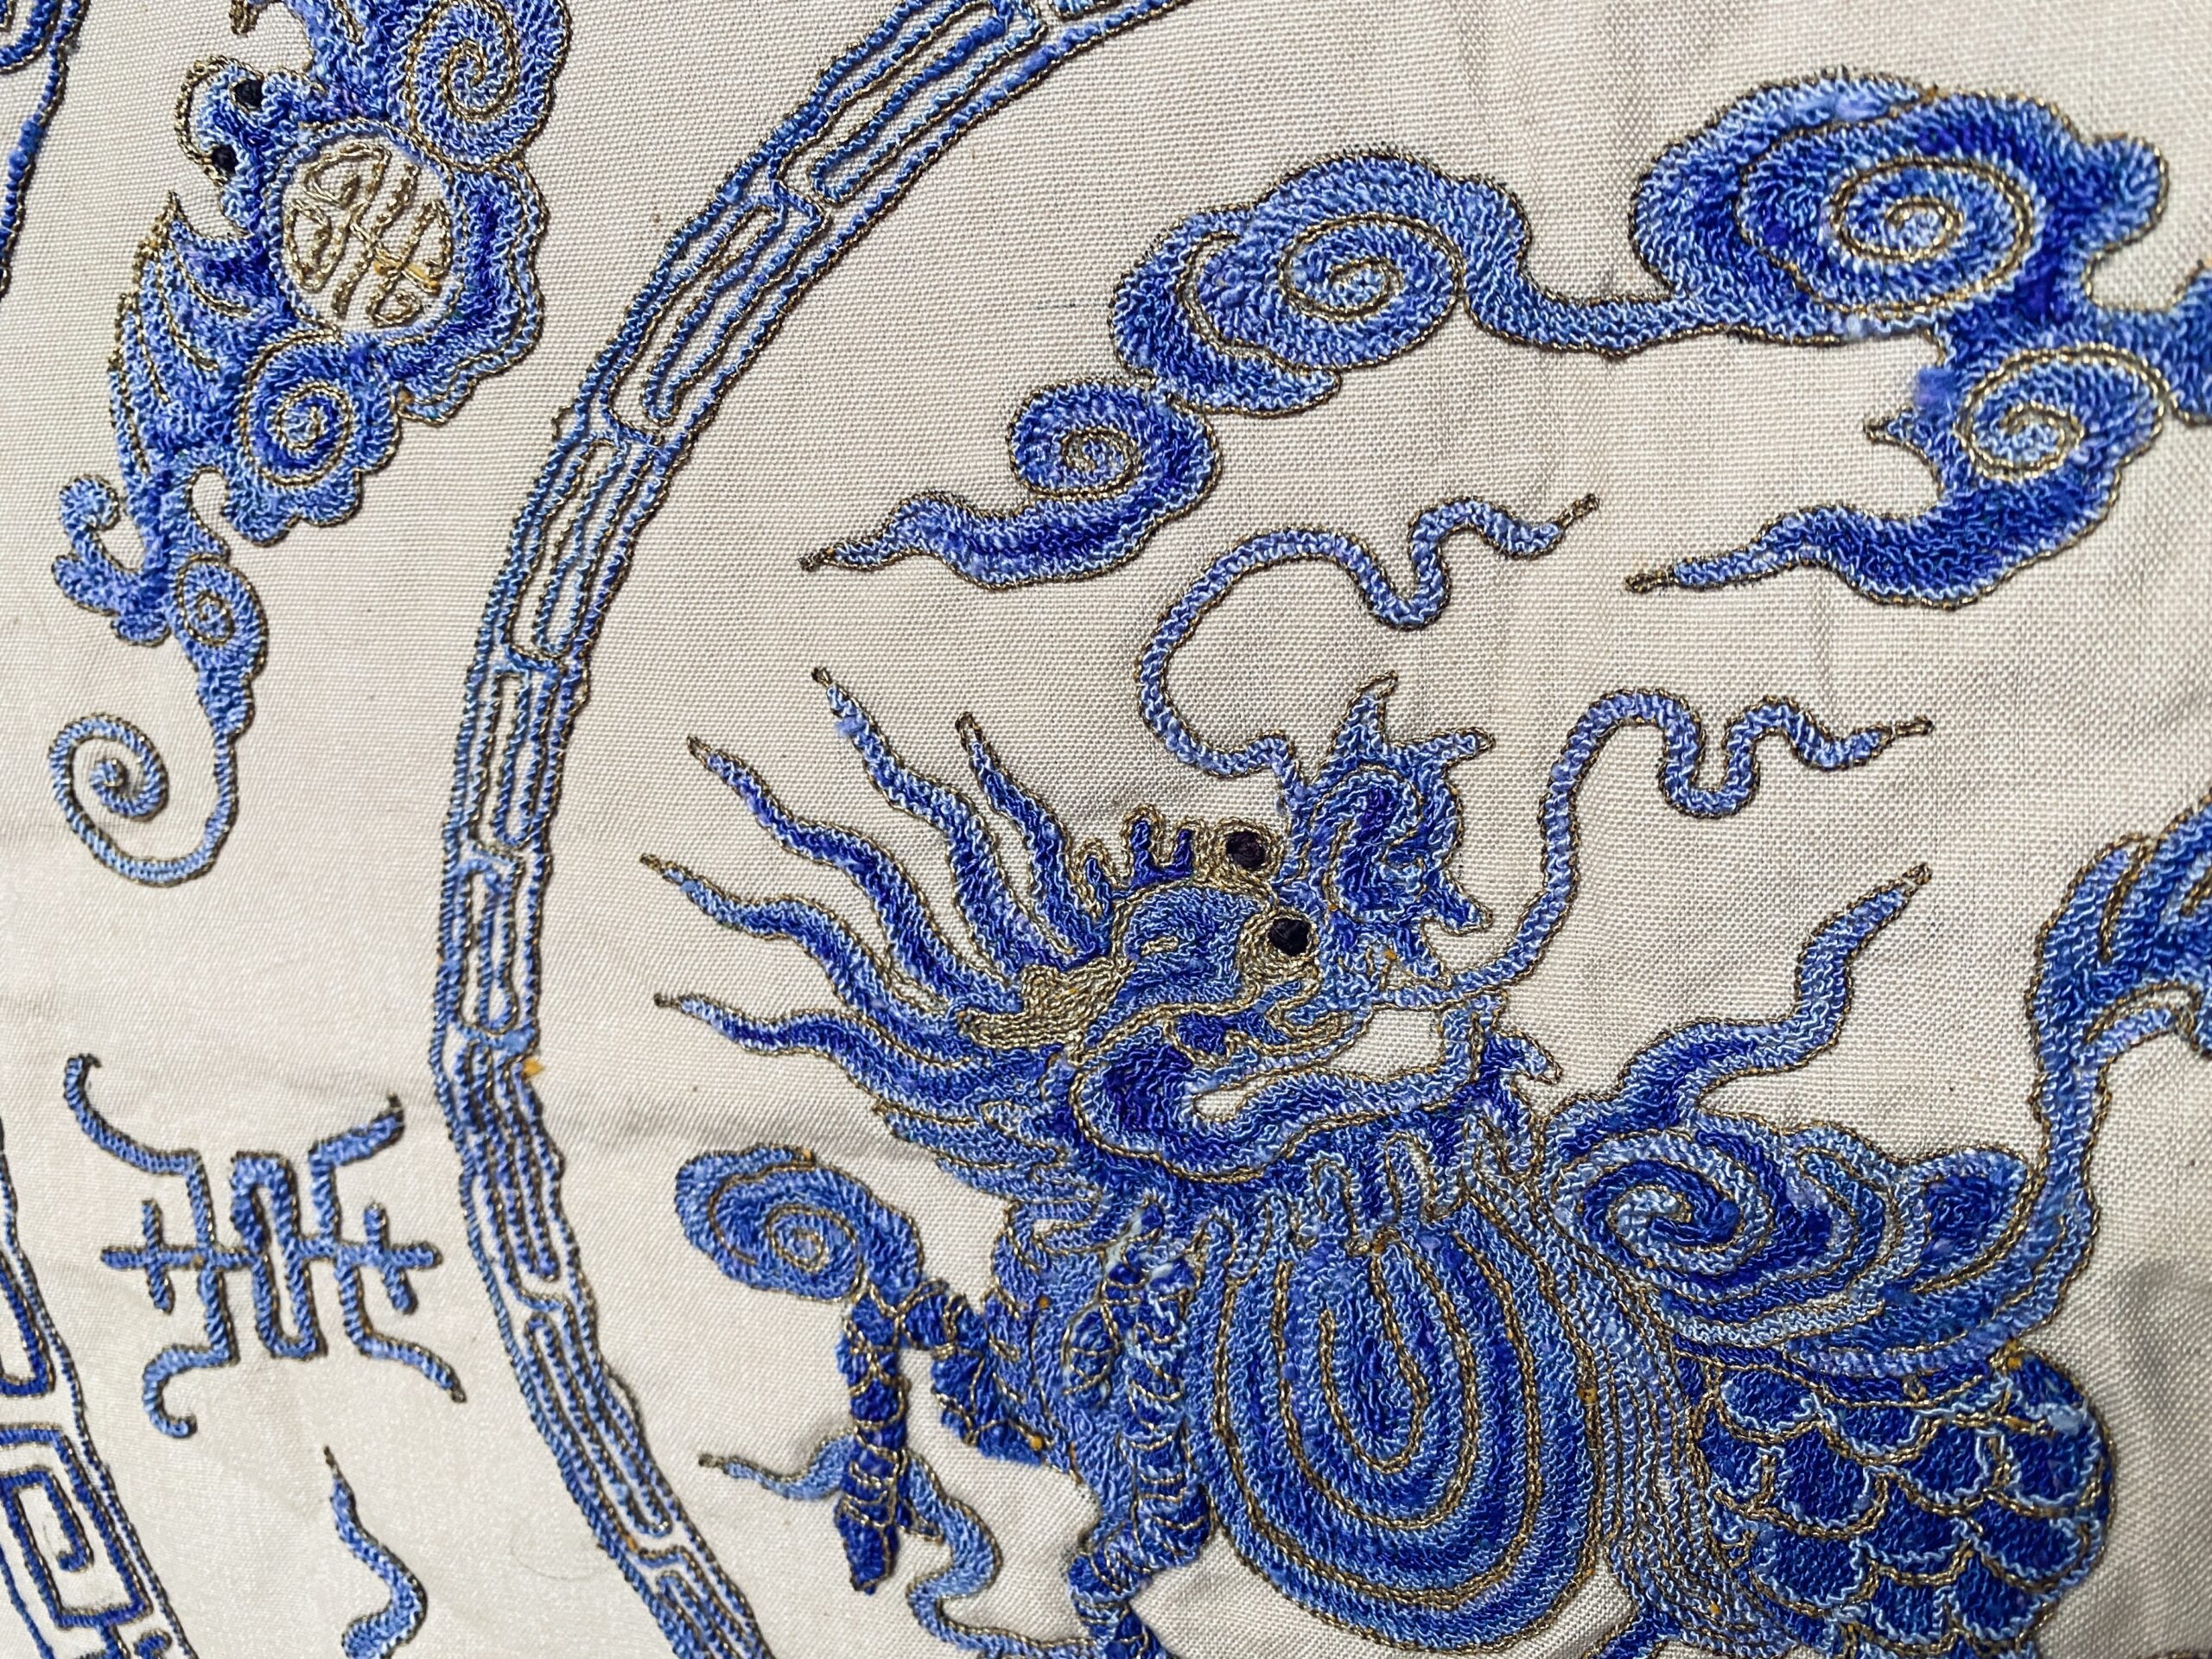 “Con rồng tơ” trong nghệ thuật thêu cổ truyền xứ Việt